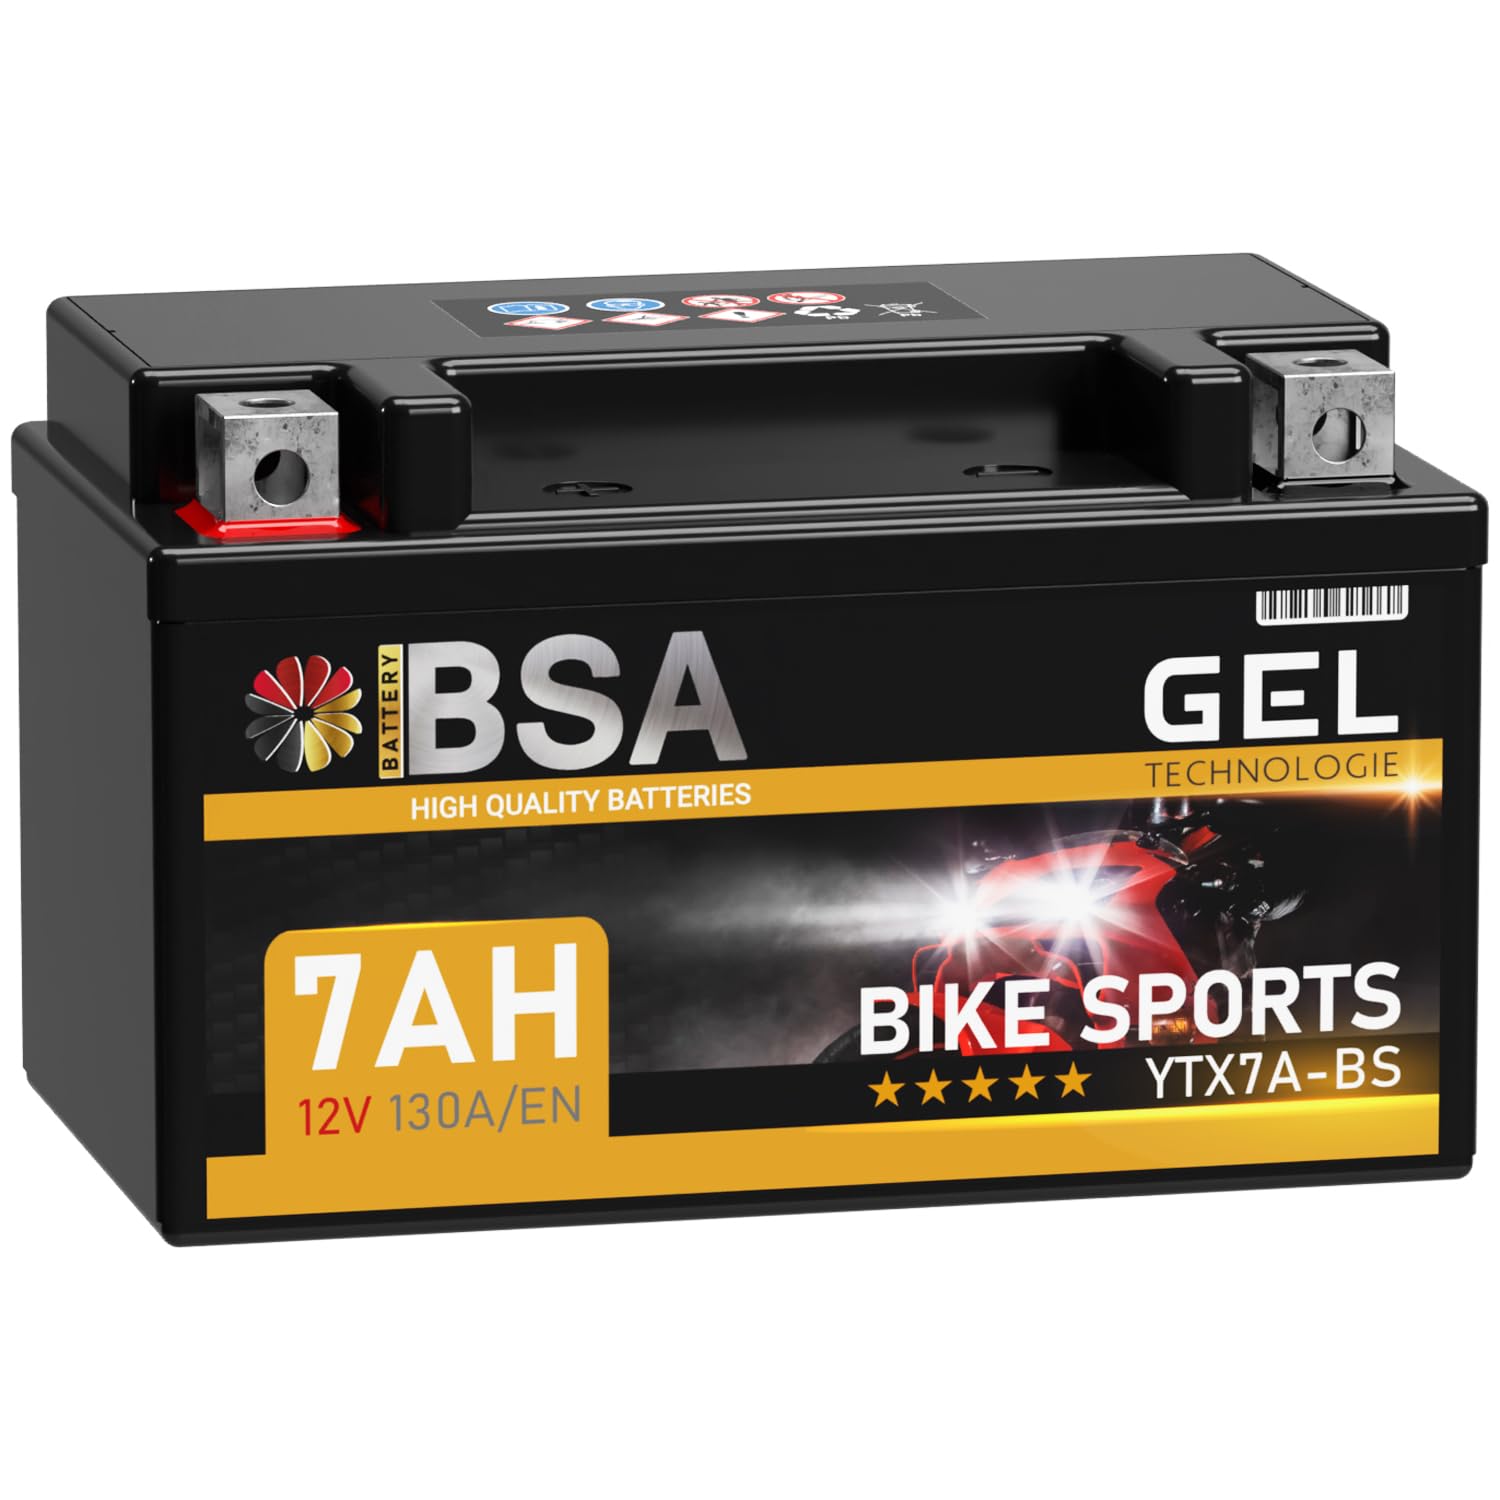 BSA YTX7A-BS GEL Roller Batterie 12V 7Ah 130A/EN Motorradbatterie doppelte Lebensdauer entspricht 50615 CTX7A-BS JMTX7A-BS vorgeladen auslaufsicher wartungsfrei ersetzt 6Ah